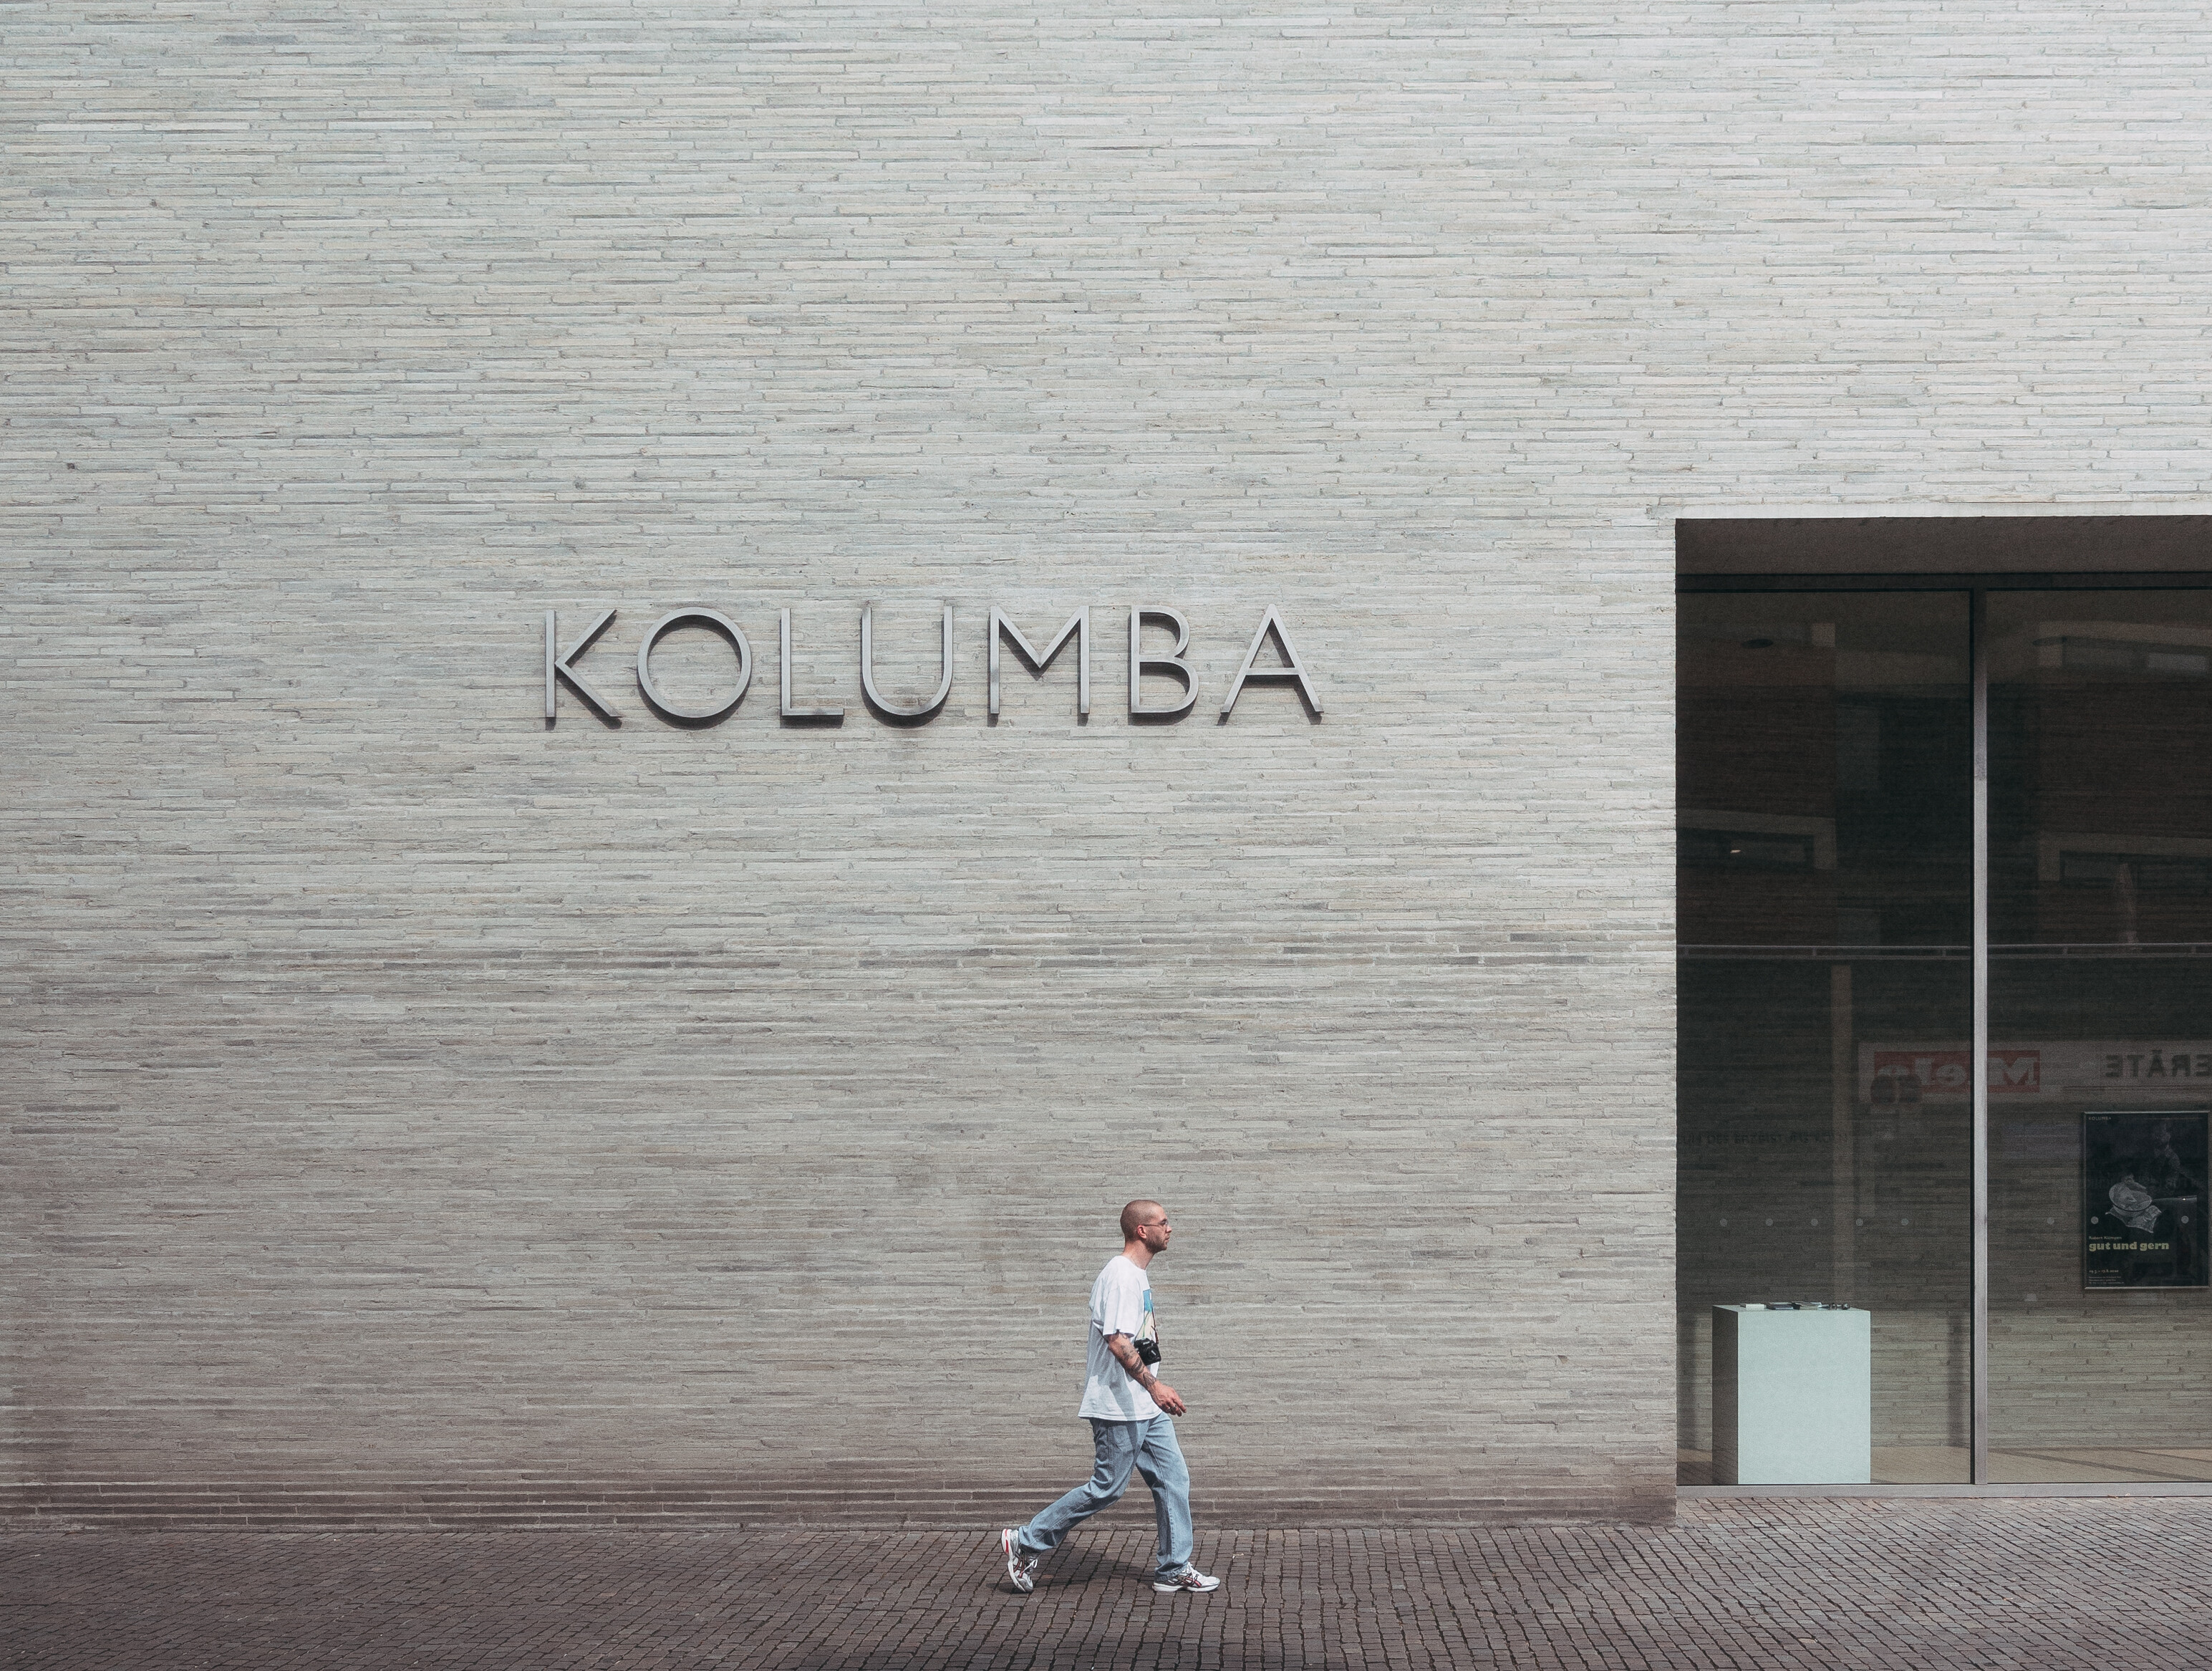 Teil der Fassade am Eingangsbereich des Museums Kolumba in Köln. © Tourismus NRW e.V./Johannes Höhn